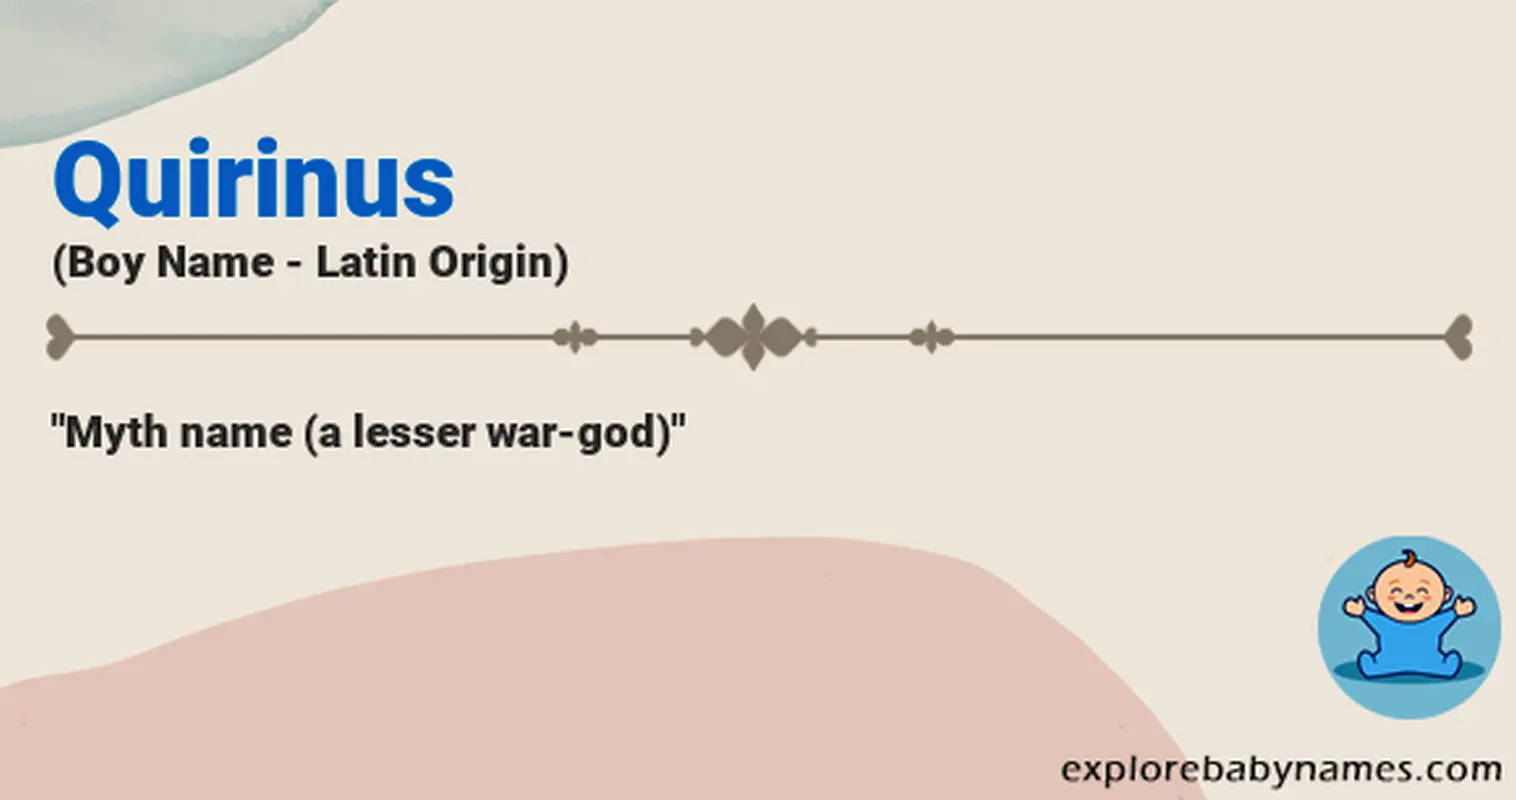 Meaning of Quirinus